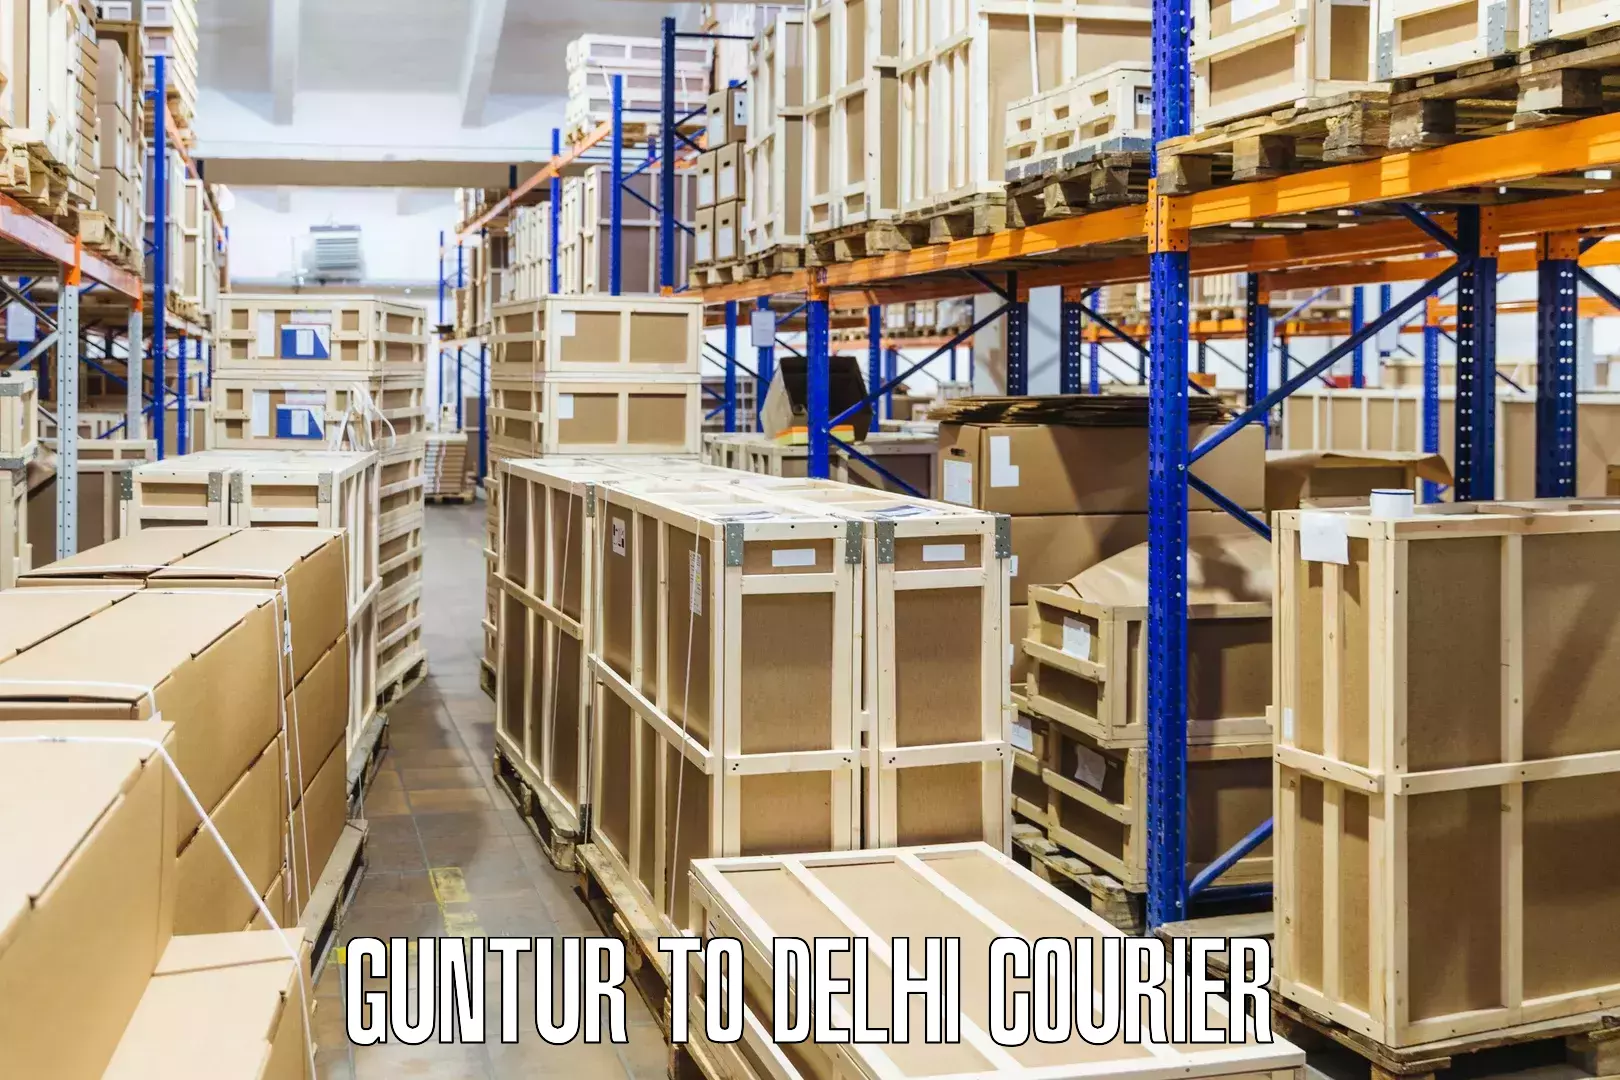 Courier service booking Guntur to Jawaharlal Nehru University New Delhi